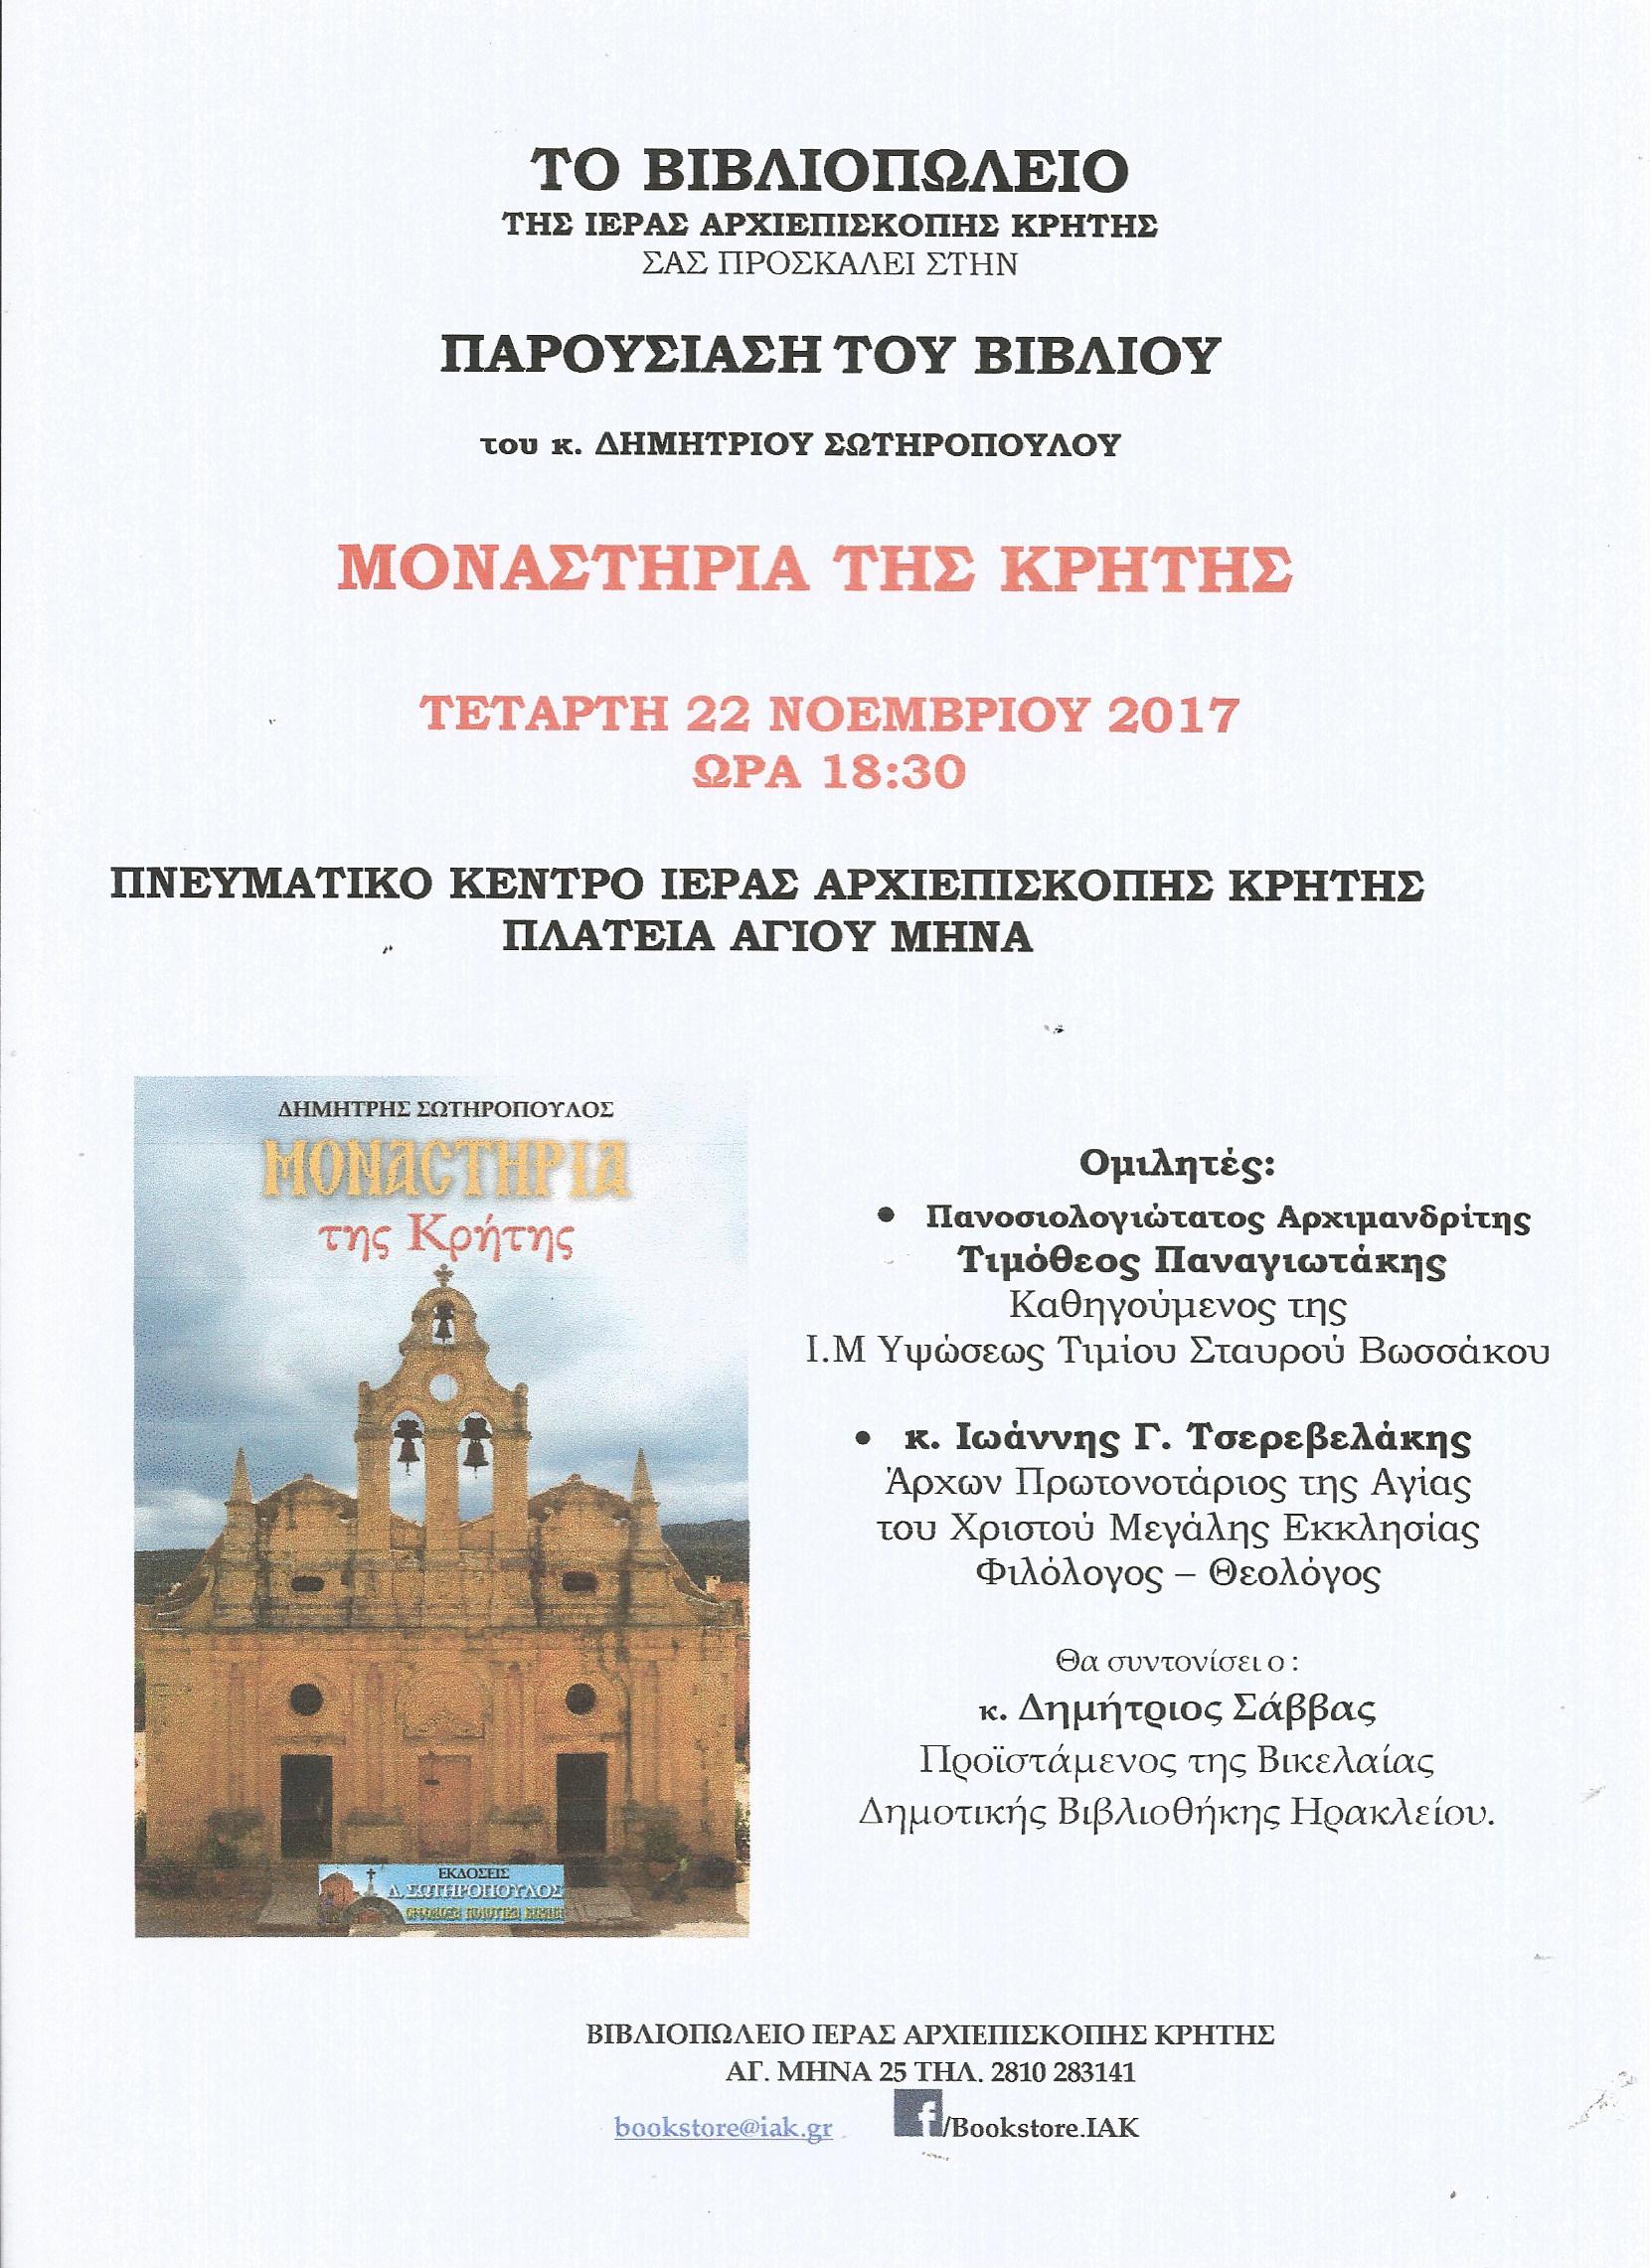 Μοναστήρια της Κρήτης